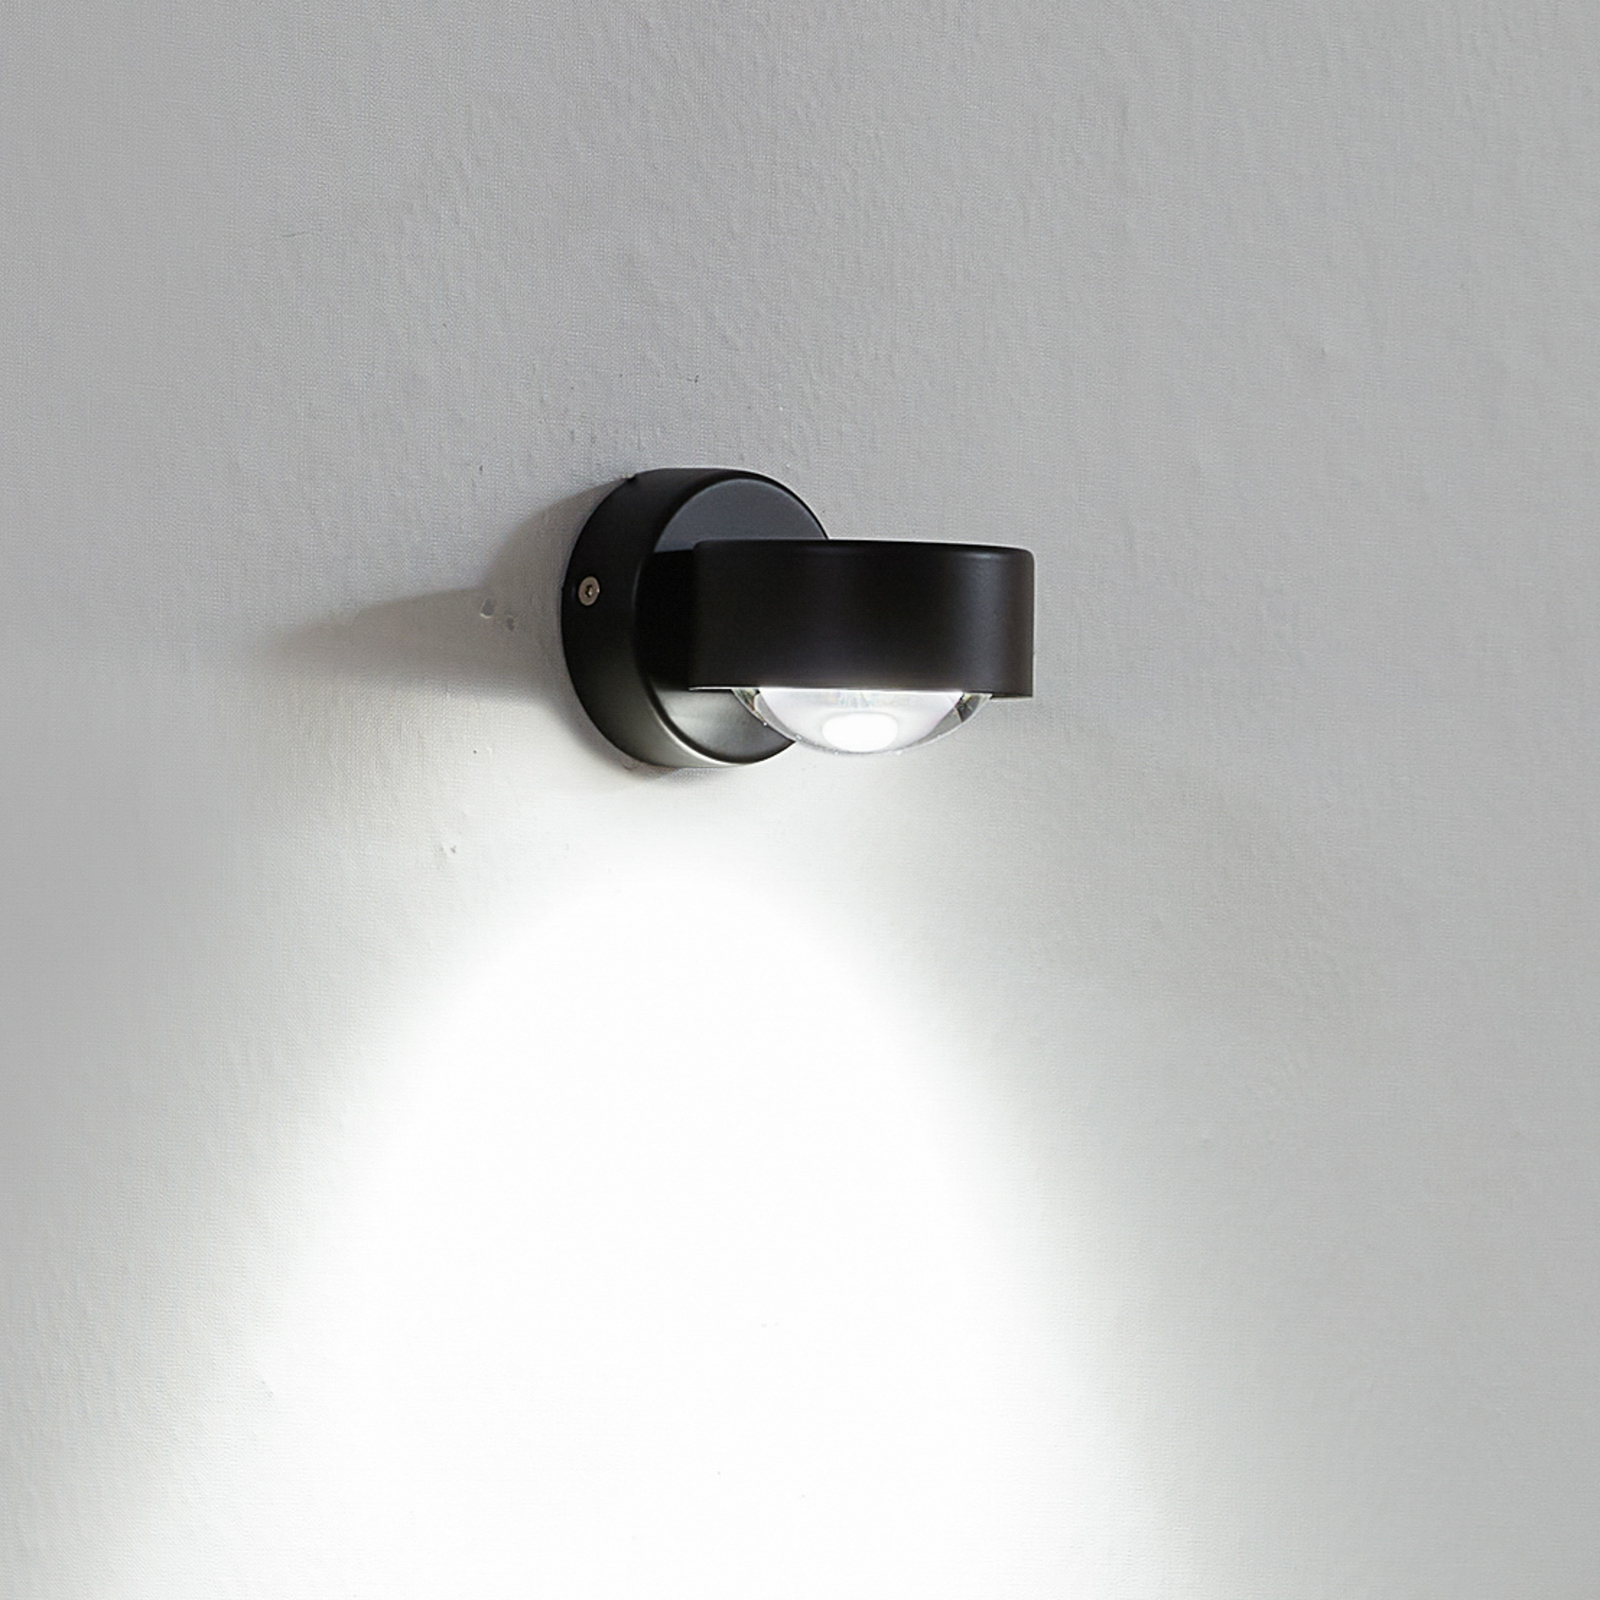 Jyla wall spotlight, black, 4,200 K, socket below